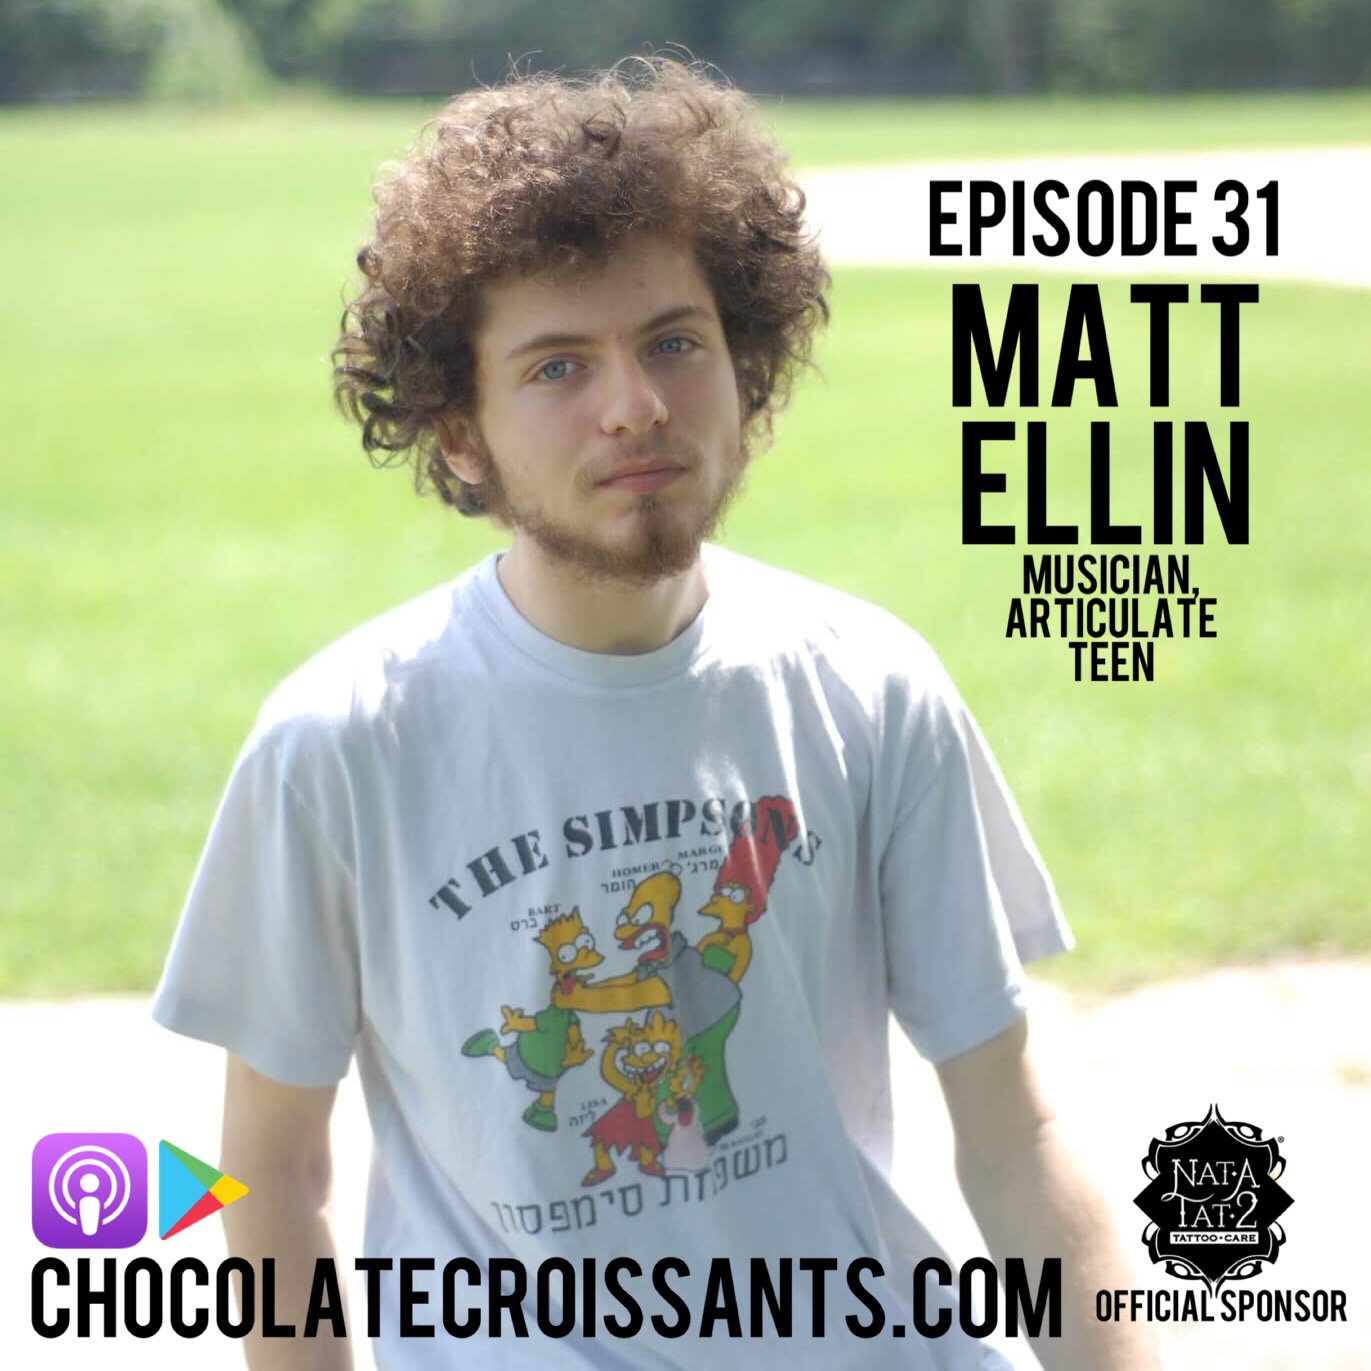 Episode 31: Matt Ellin (Musician, Articulate Teen)